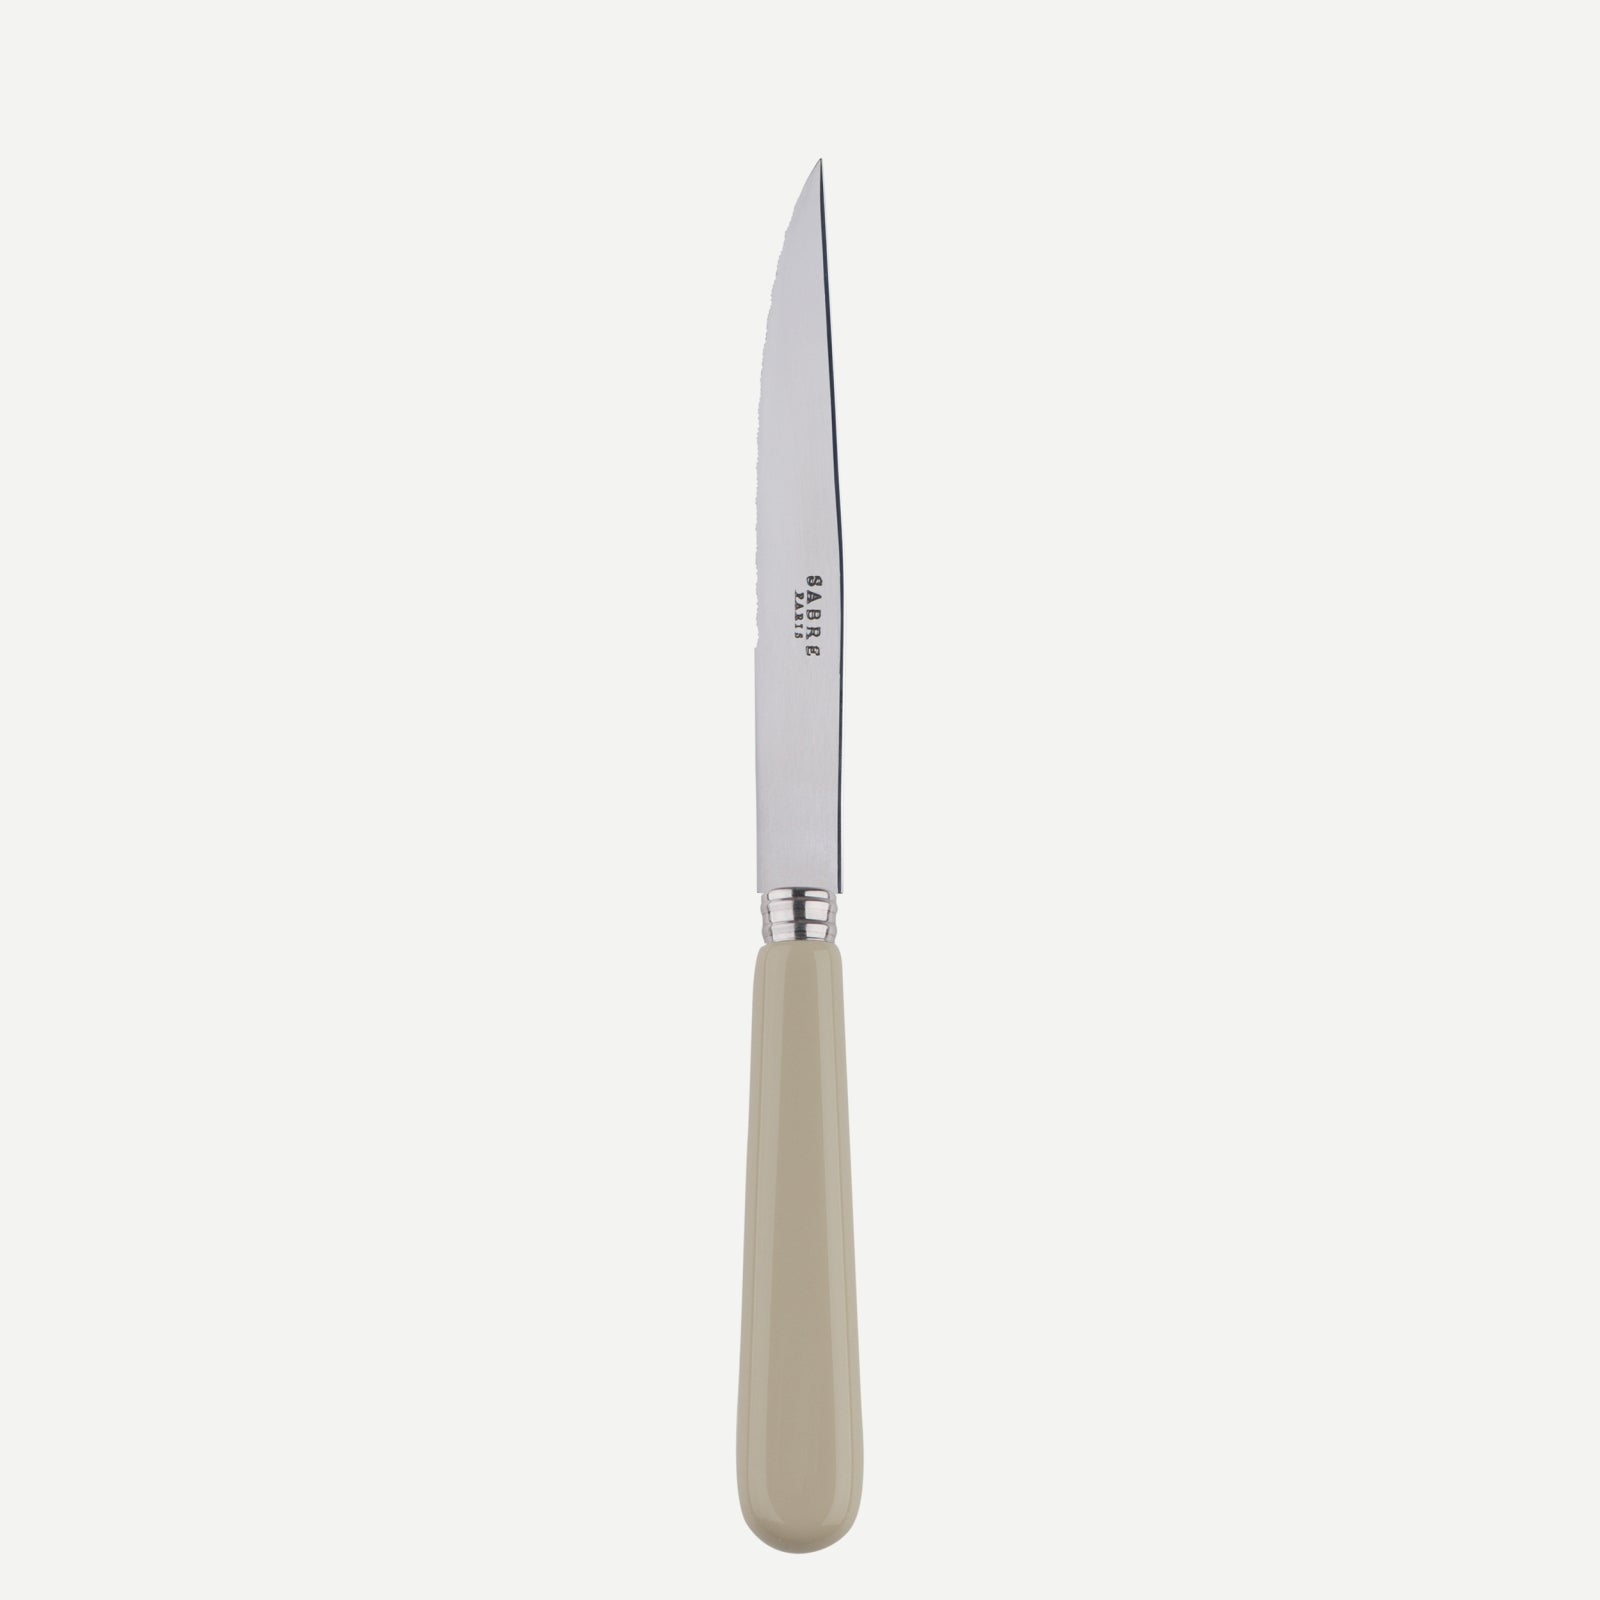 Steack knife - Pop unis - Light kaki